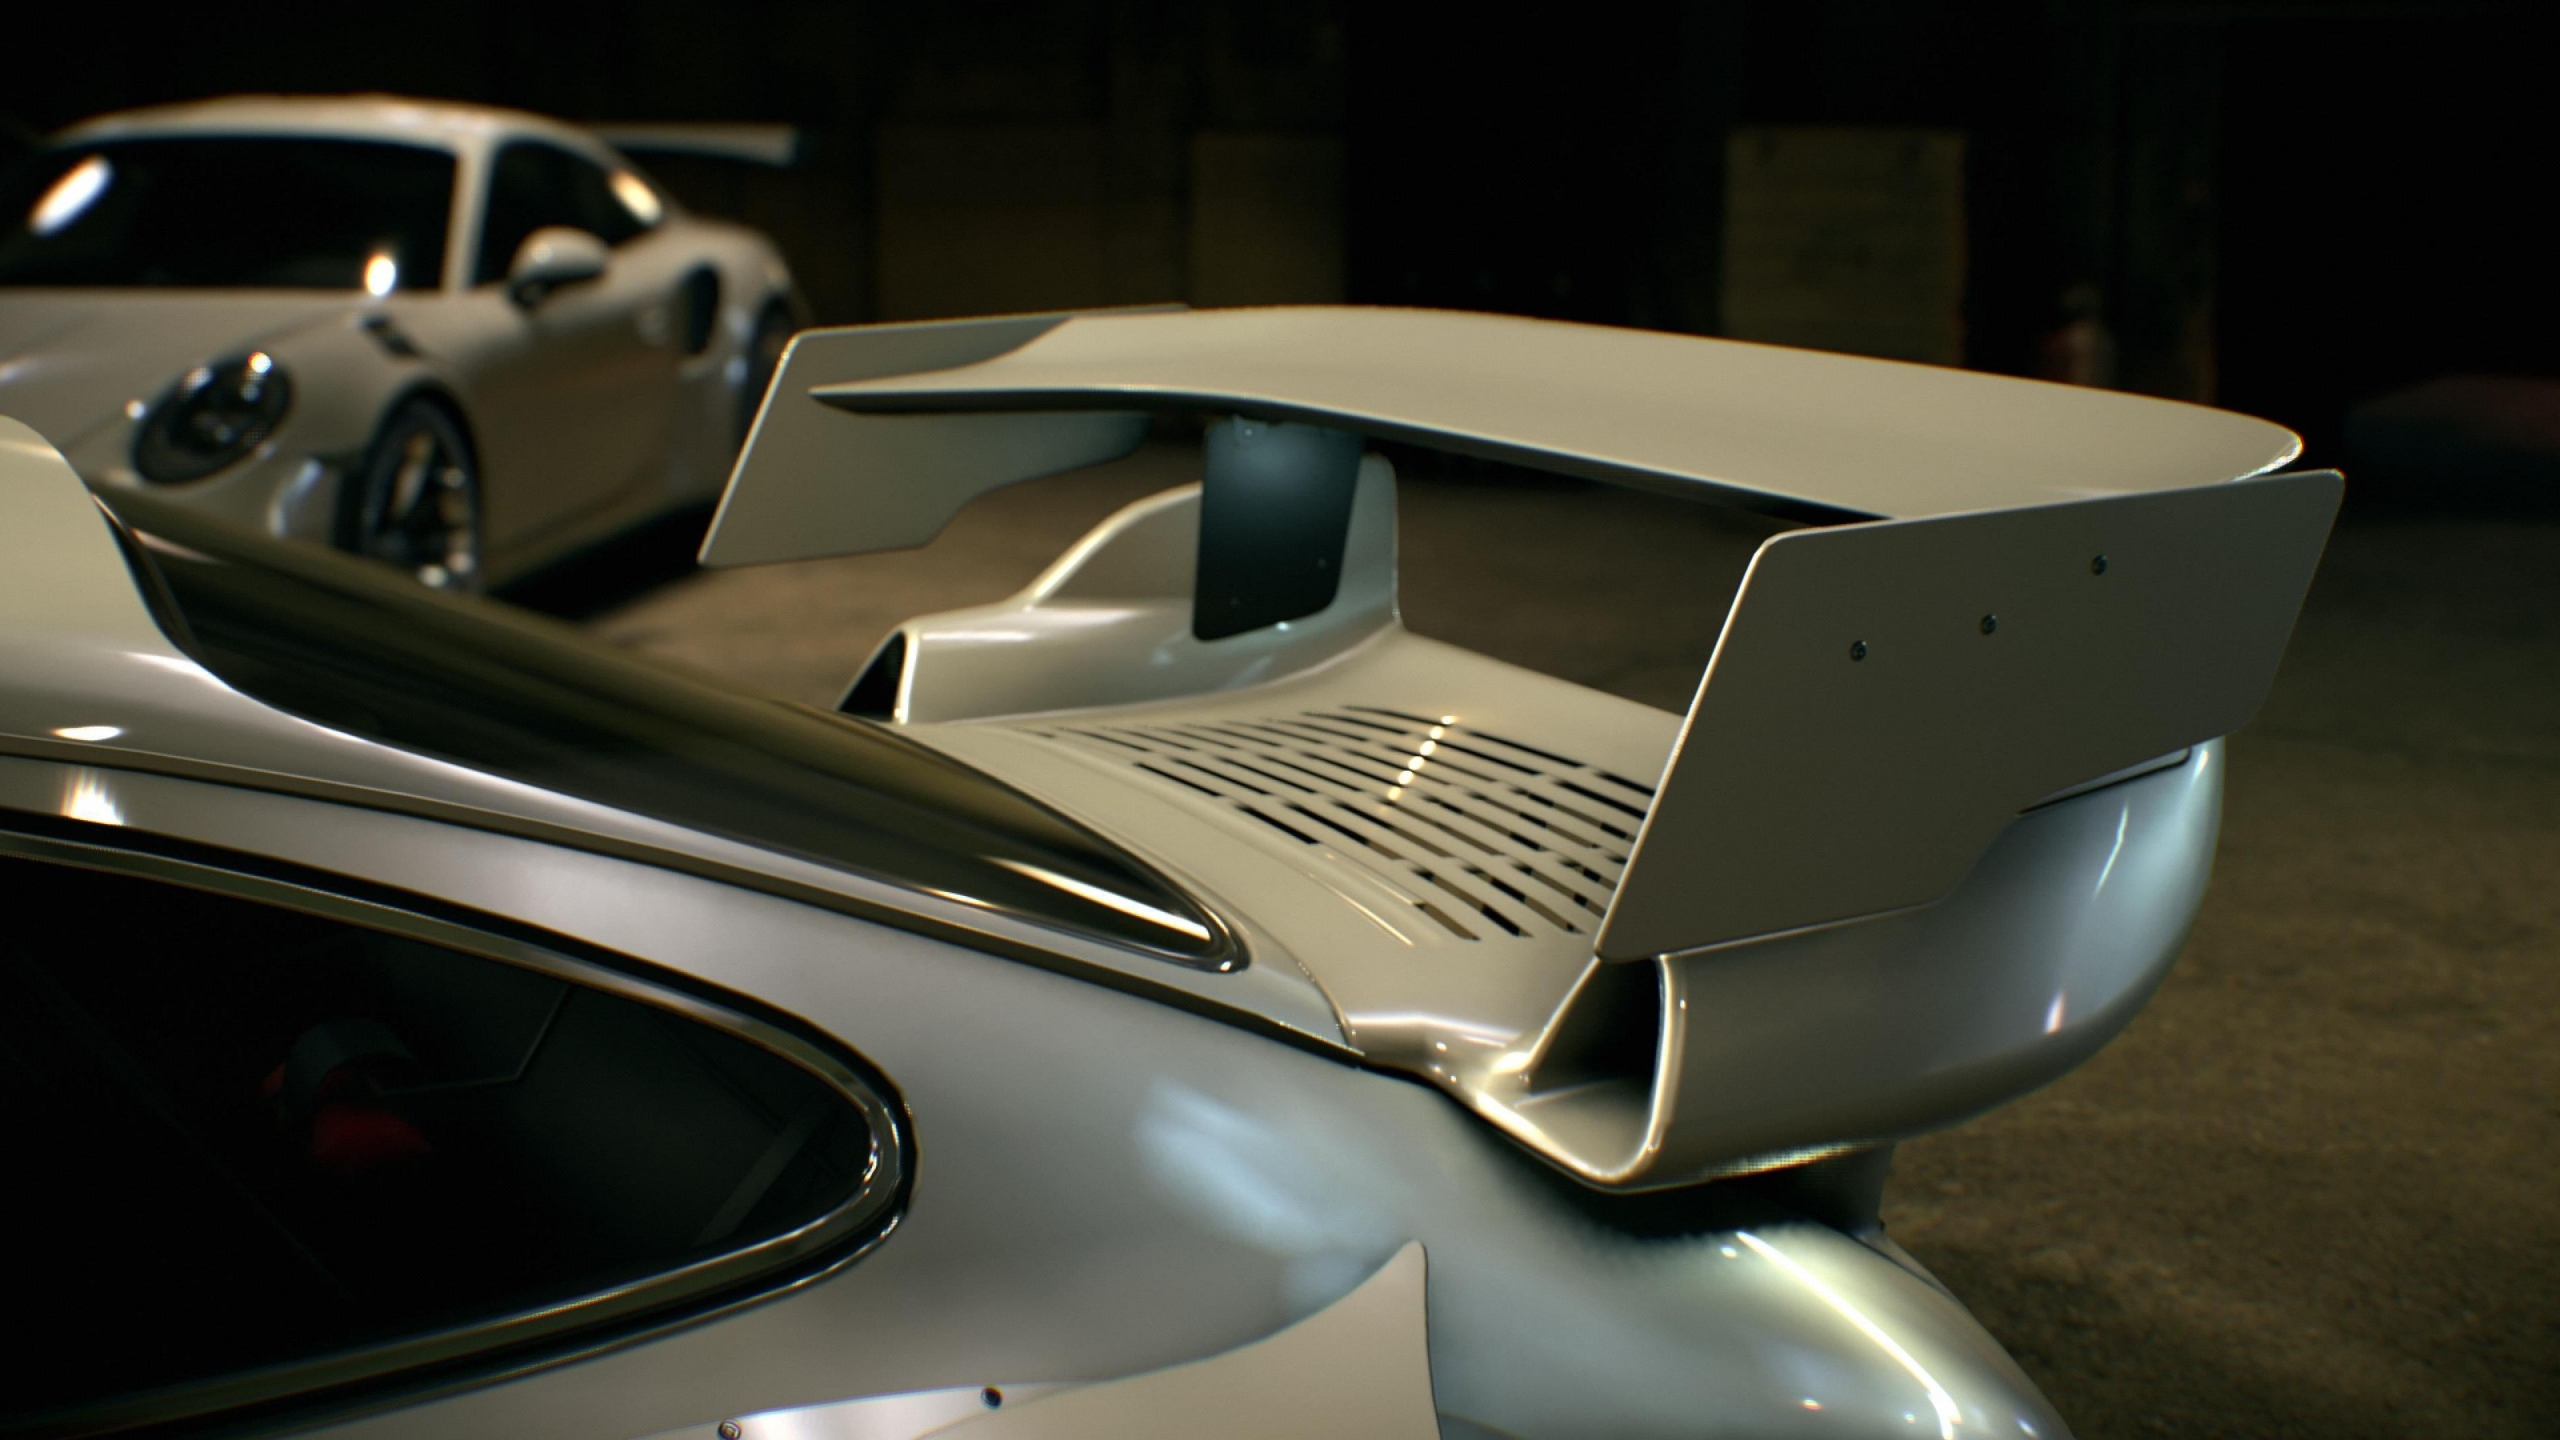 Need For Speed Porsche Spoiler for 2560x1440 HDTV resolution